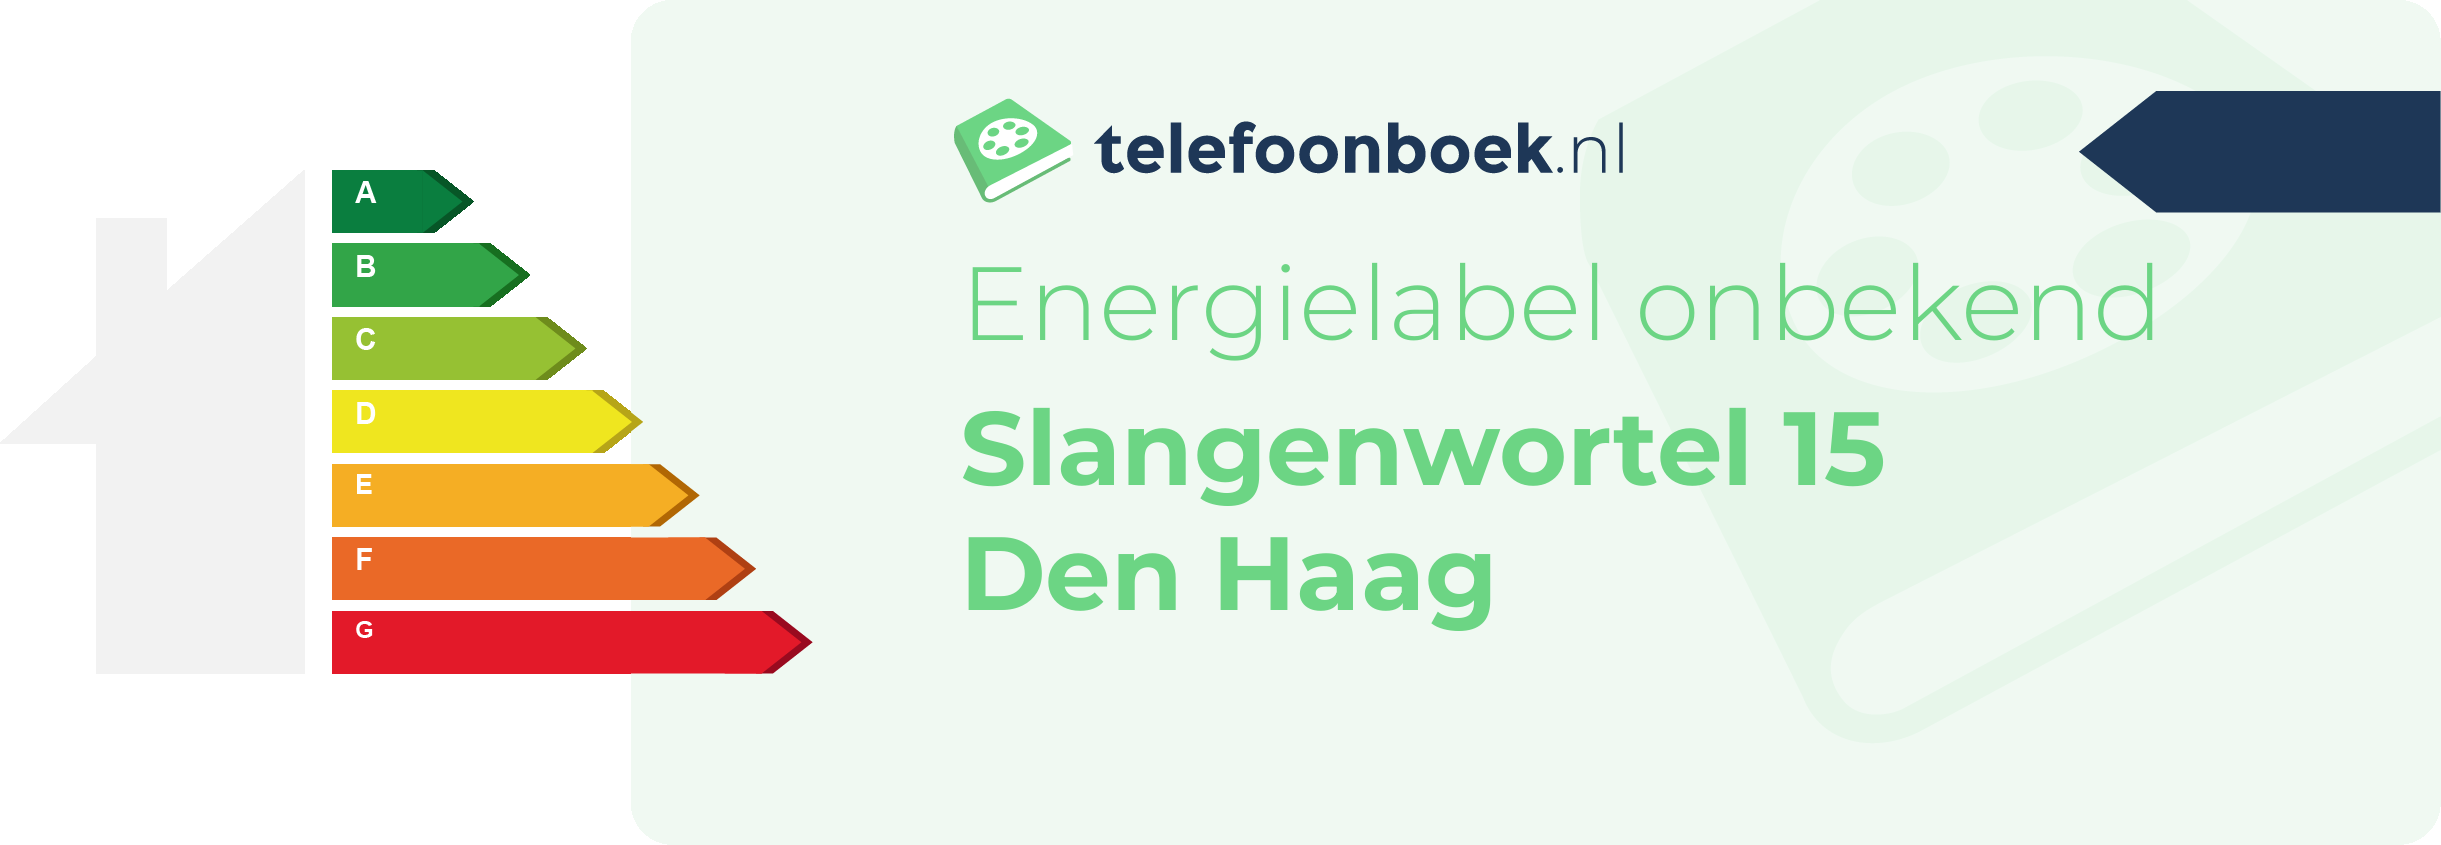 Energielabel Slangenwortel 15 Den Haag